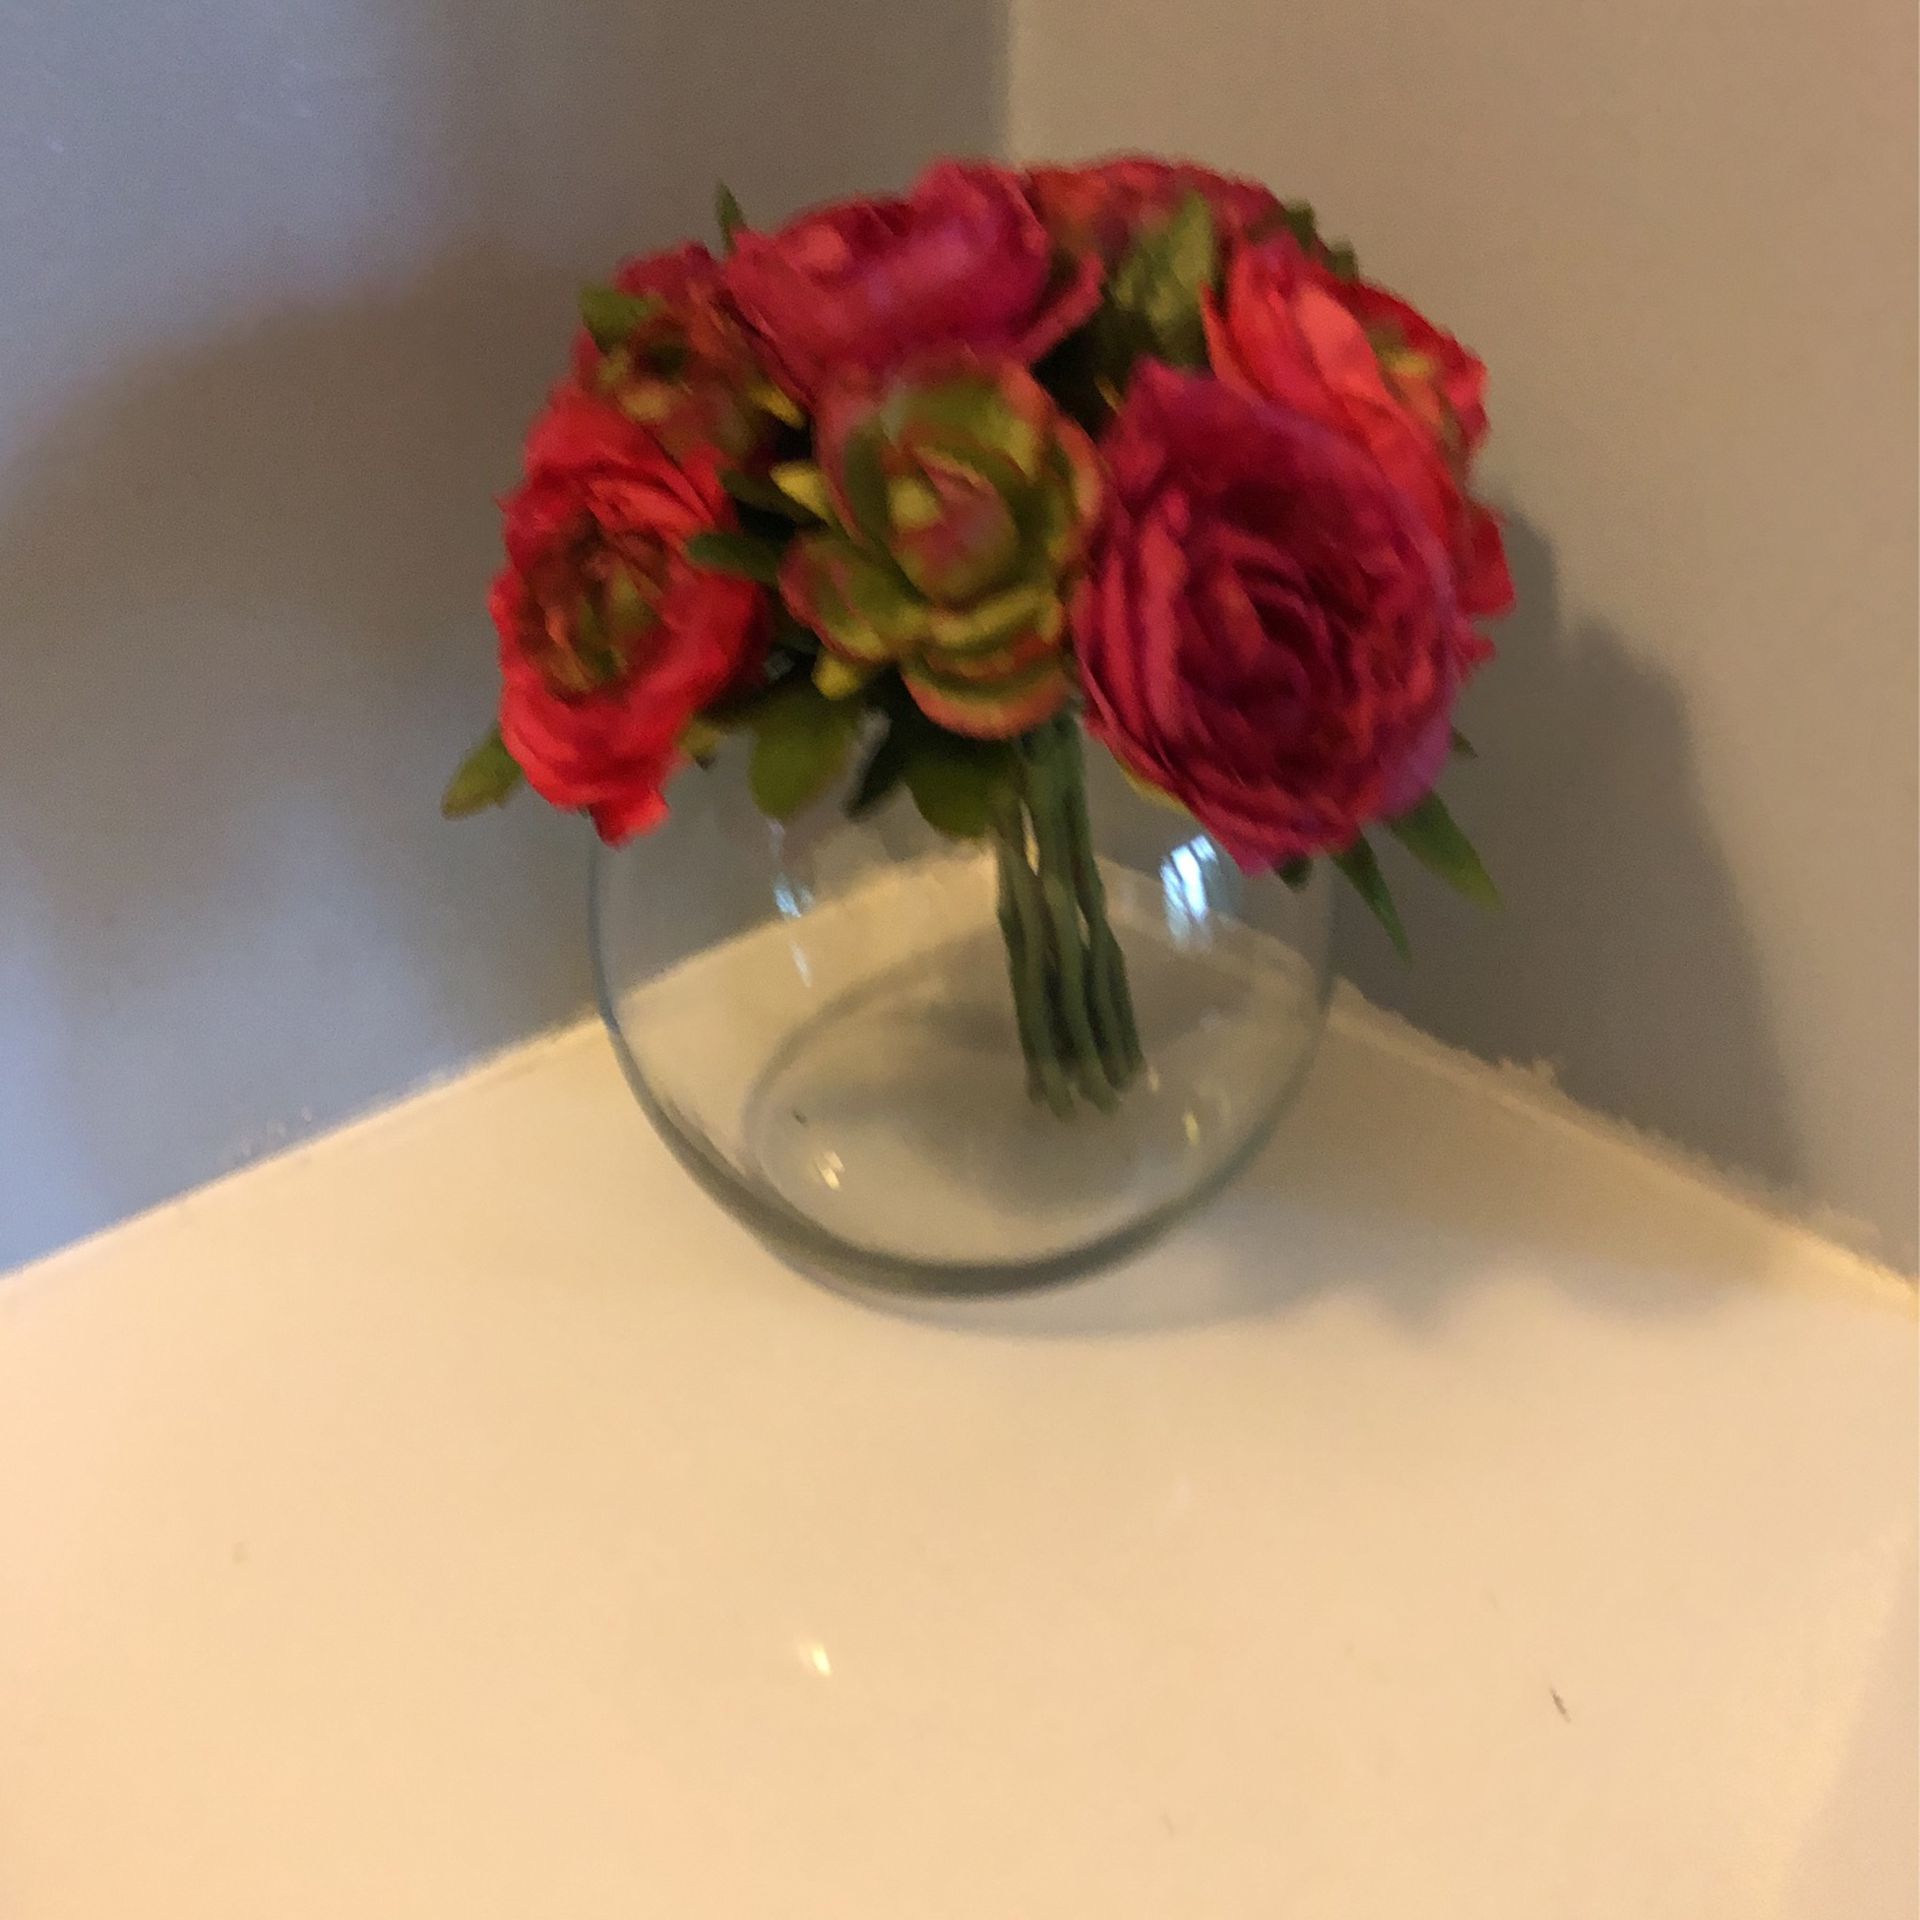 Center Piece Floral Arrangements, 9” Ranunculus Bouquet In 5.5” Clear Glass Fish Bowl Vase